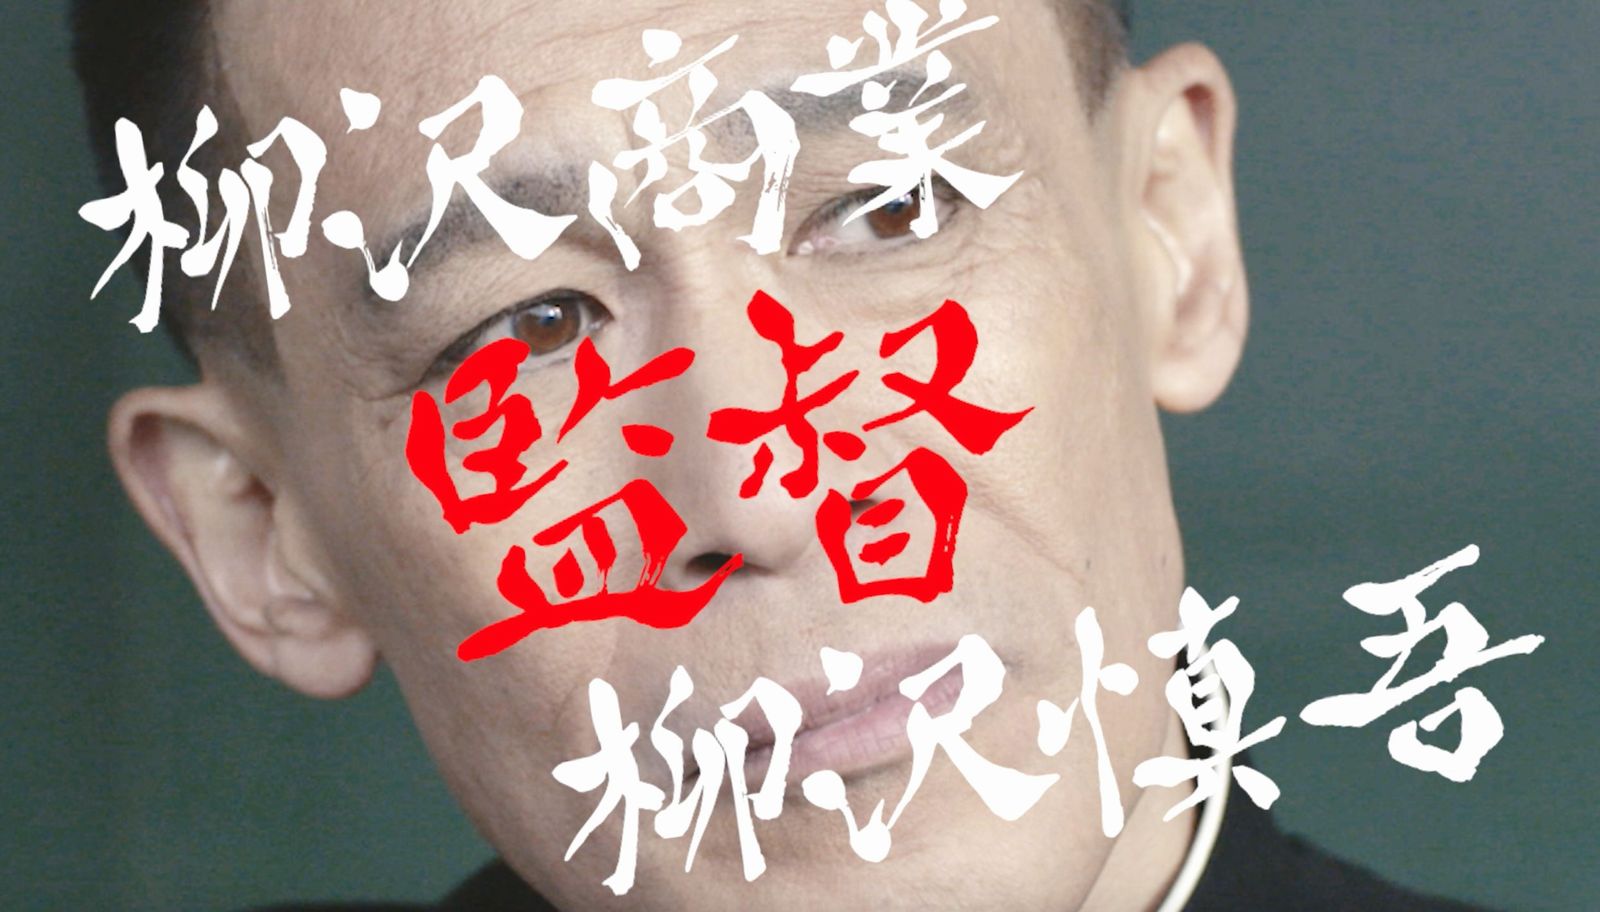 八月のシンデレラナイン で柳沢慎吾さんが出演するプロモーション動画を公開 Appliv Games